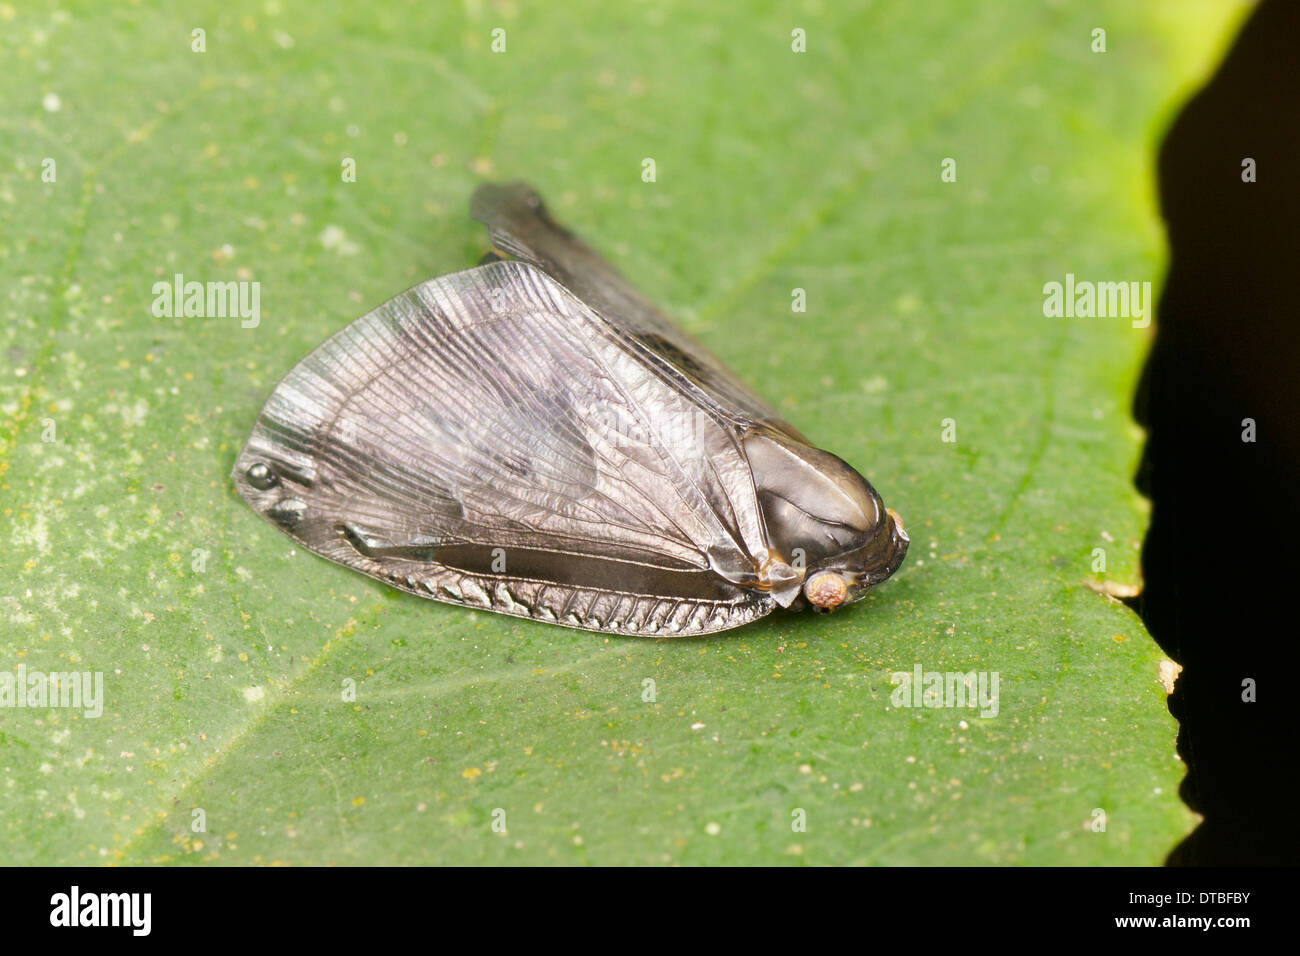 Planthopper (Ricaniidae). La famiglia Ricaniidae è un gruppo di insetti hemipteran, contenente oltre 40 generi e specie 400 giornate mondiali Foto Stock